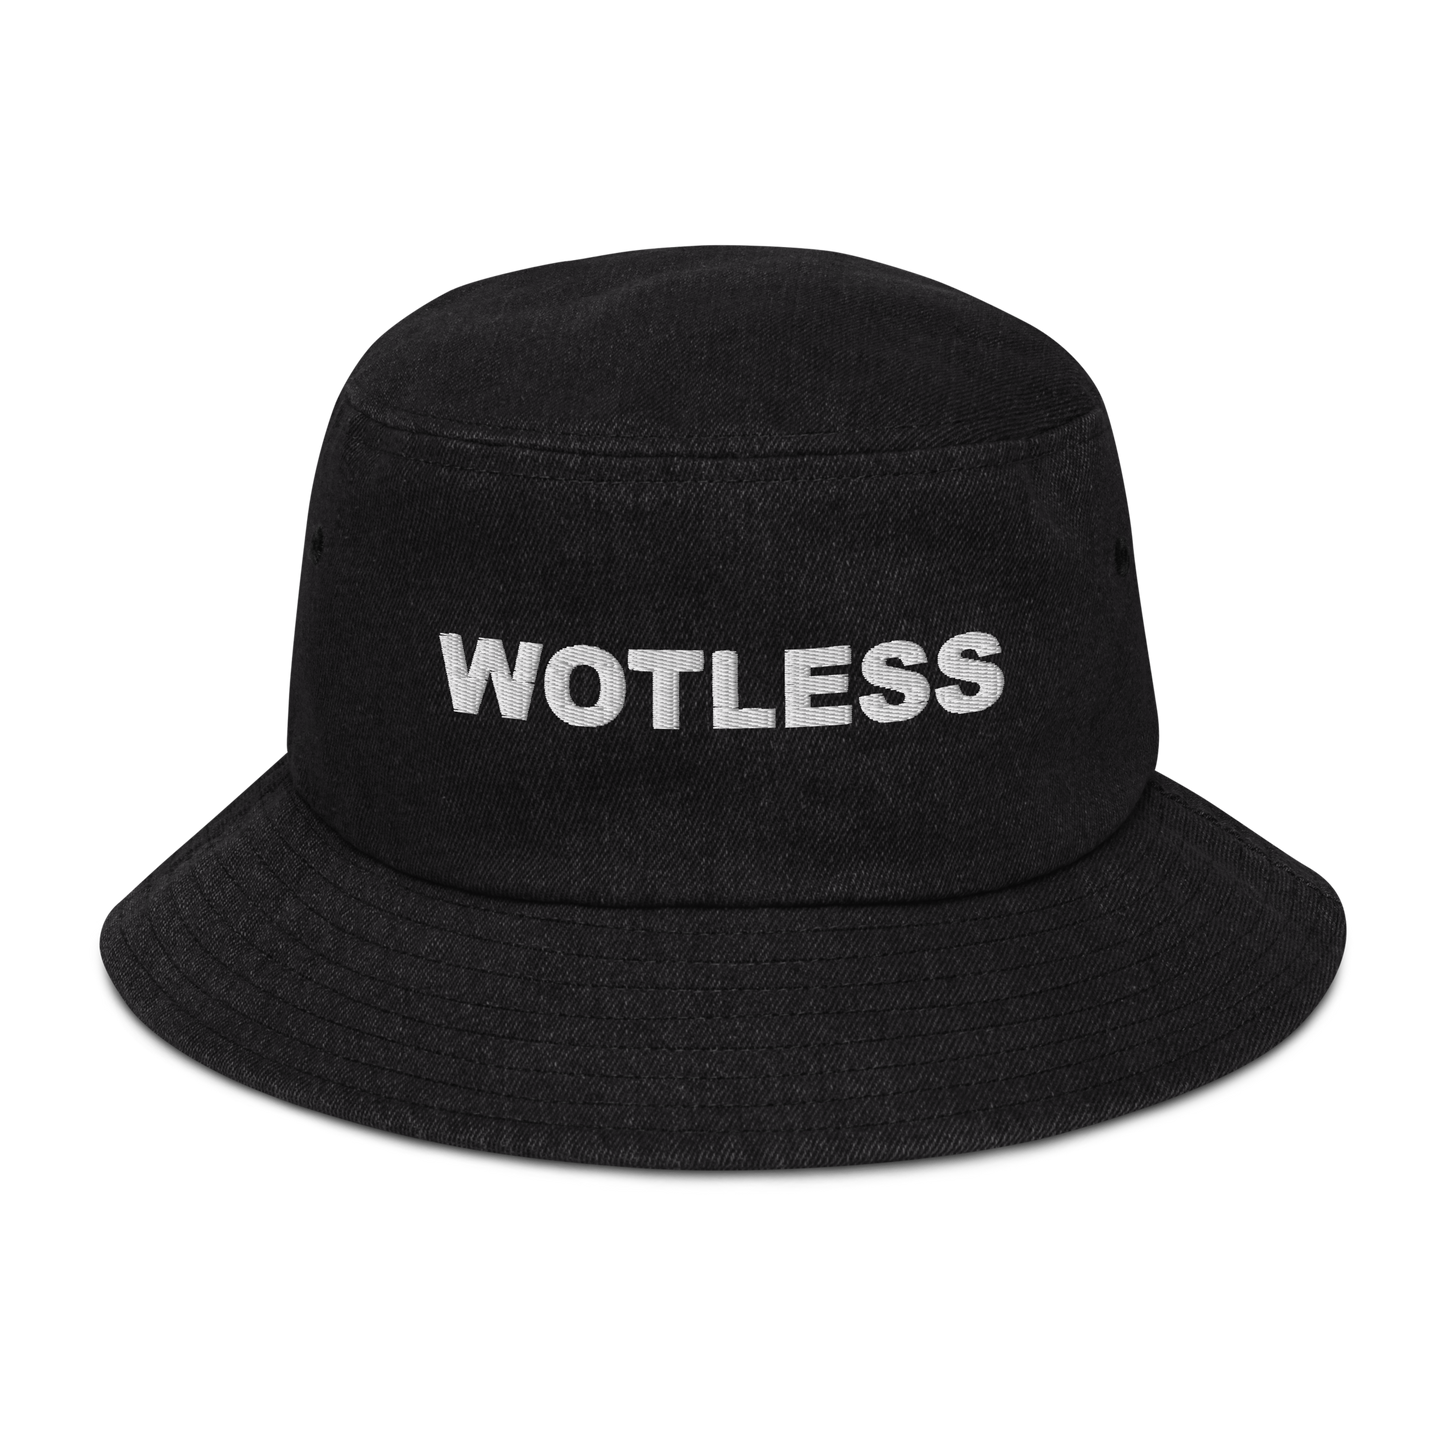 Wotless Denim bucket hat